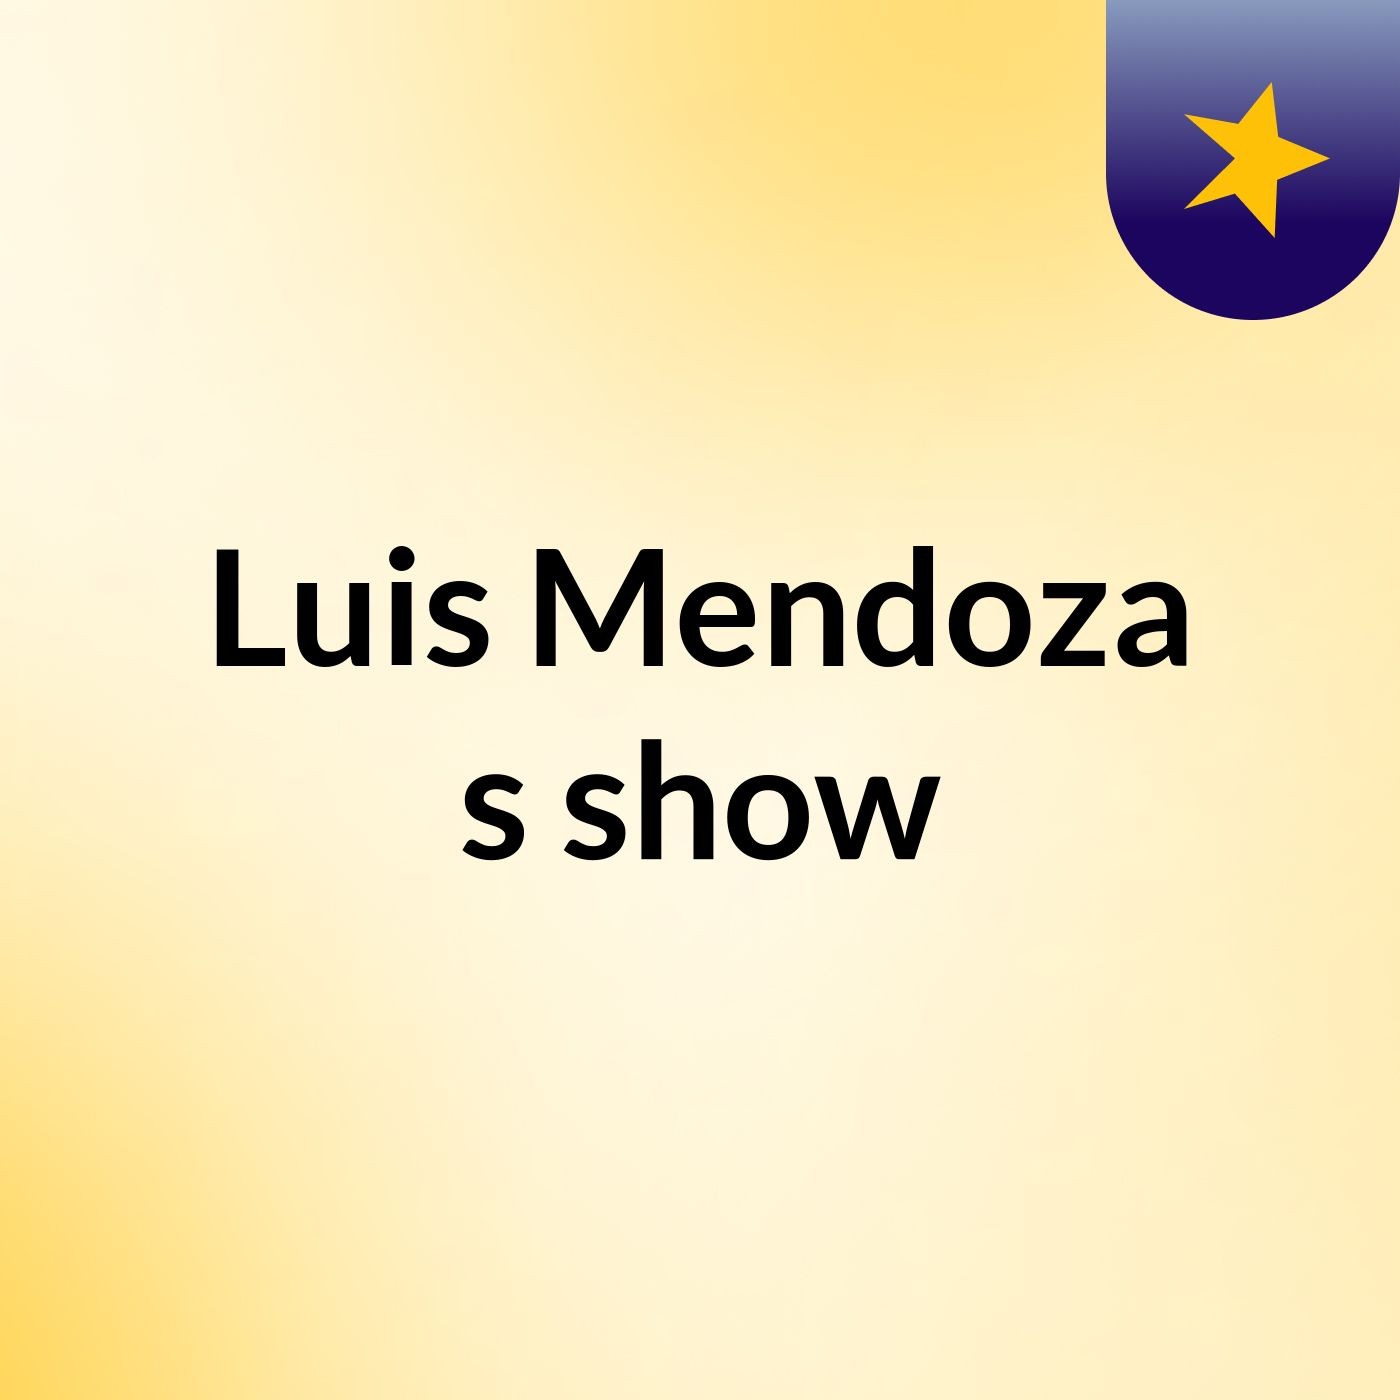 Luis Mendoza's show